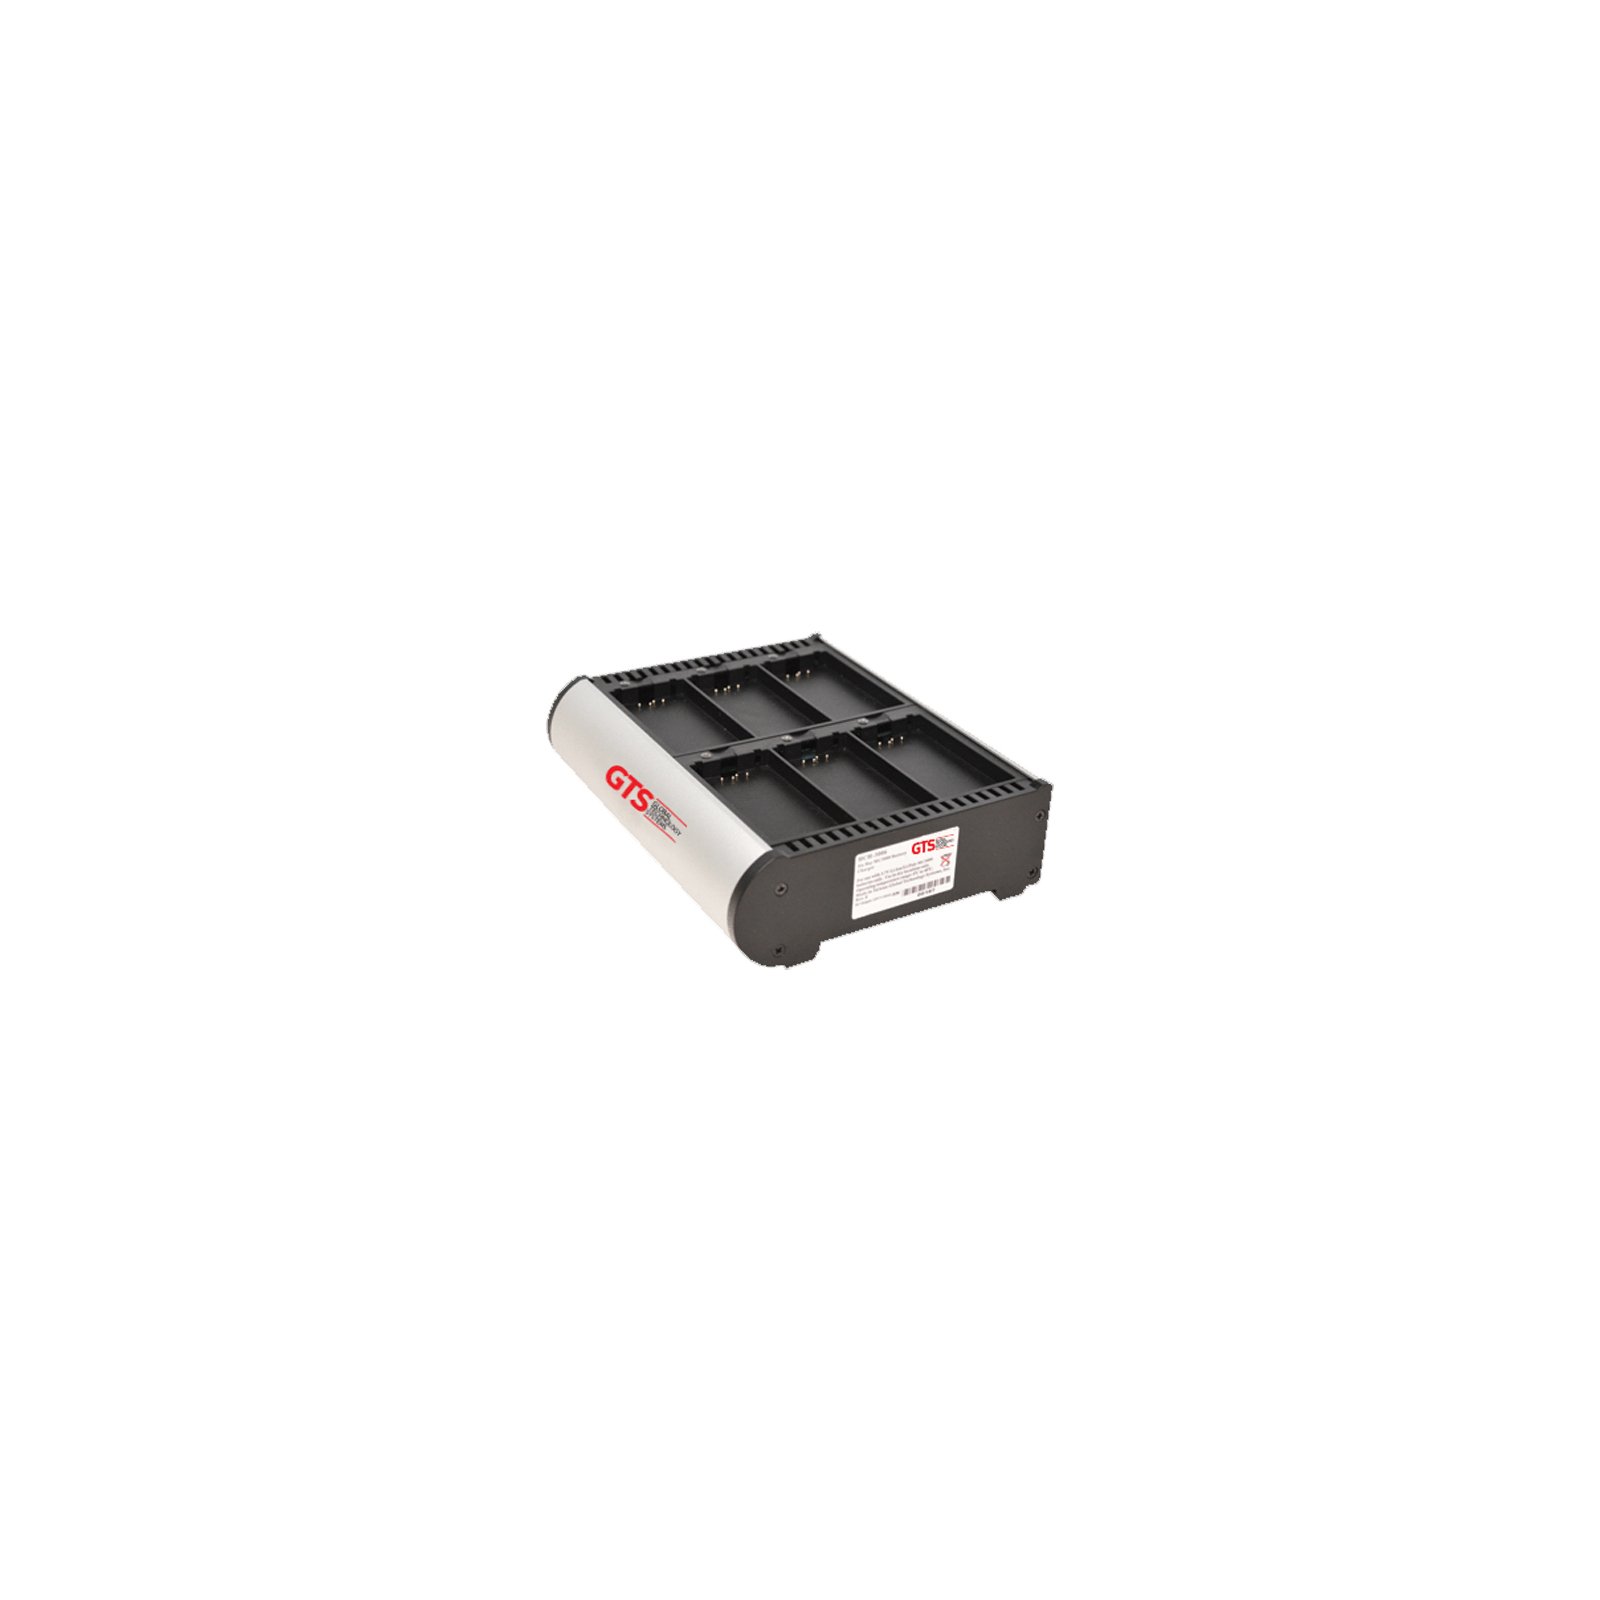 Кредл Symbol/Zebra 6-слотовый зарядный кредл для батарей МС3090/3190 (HCH-3006-CHG)